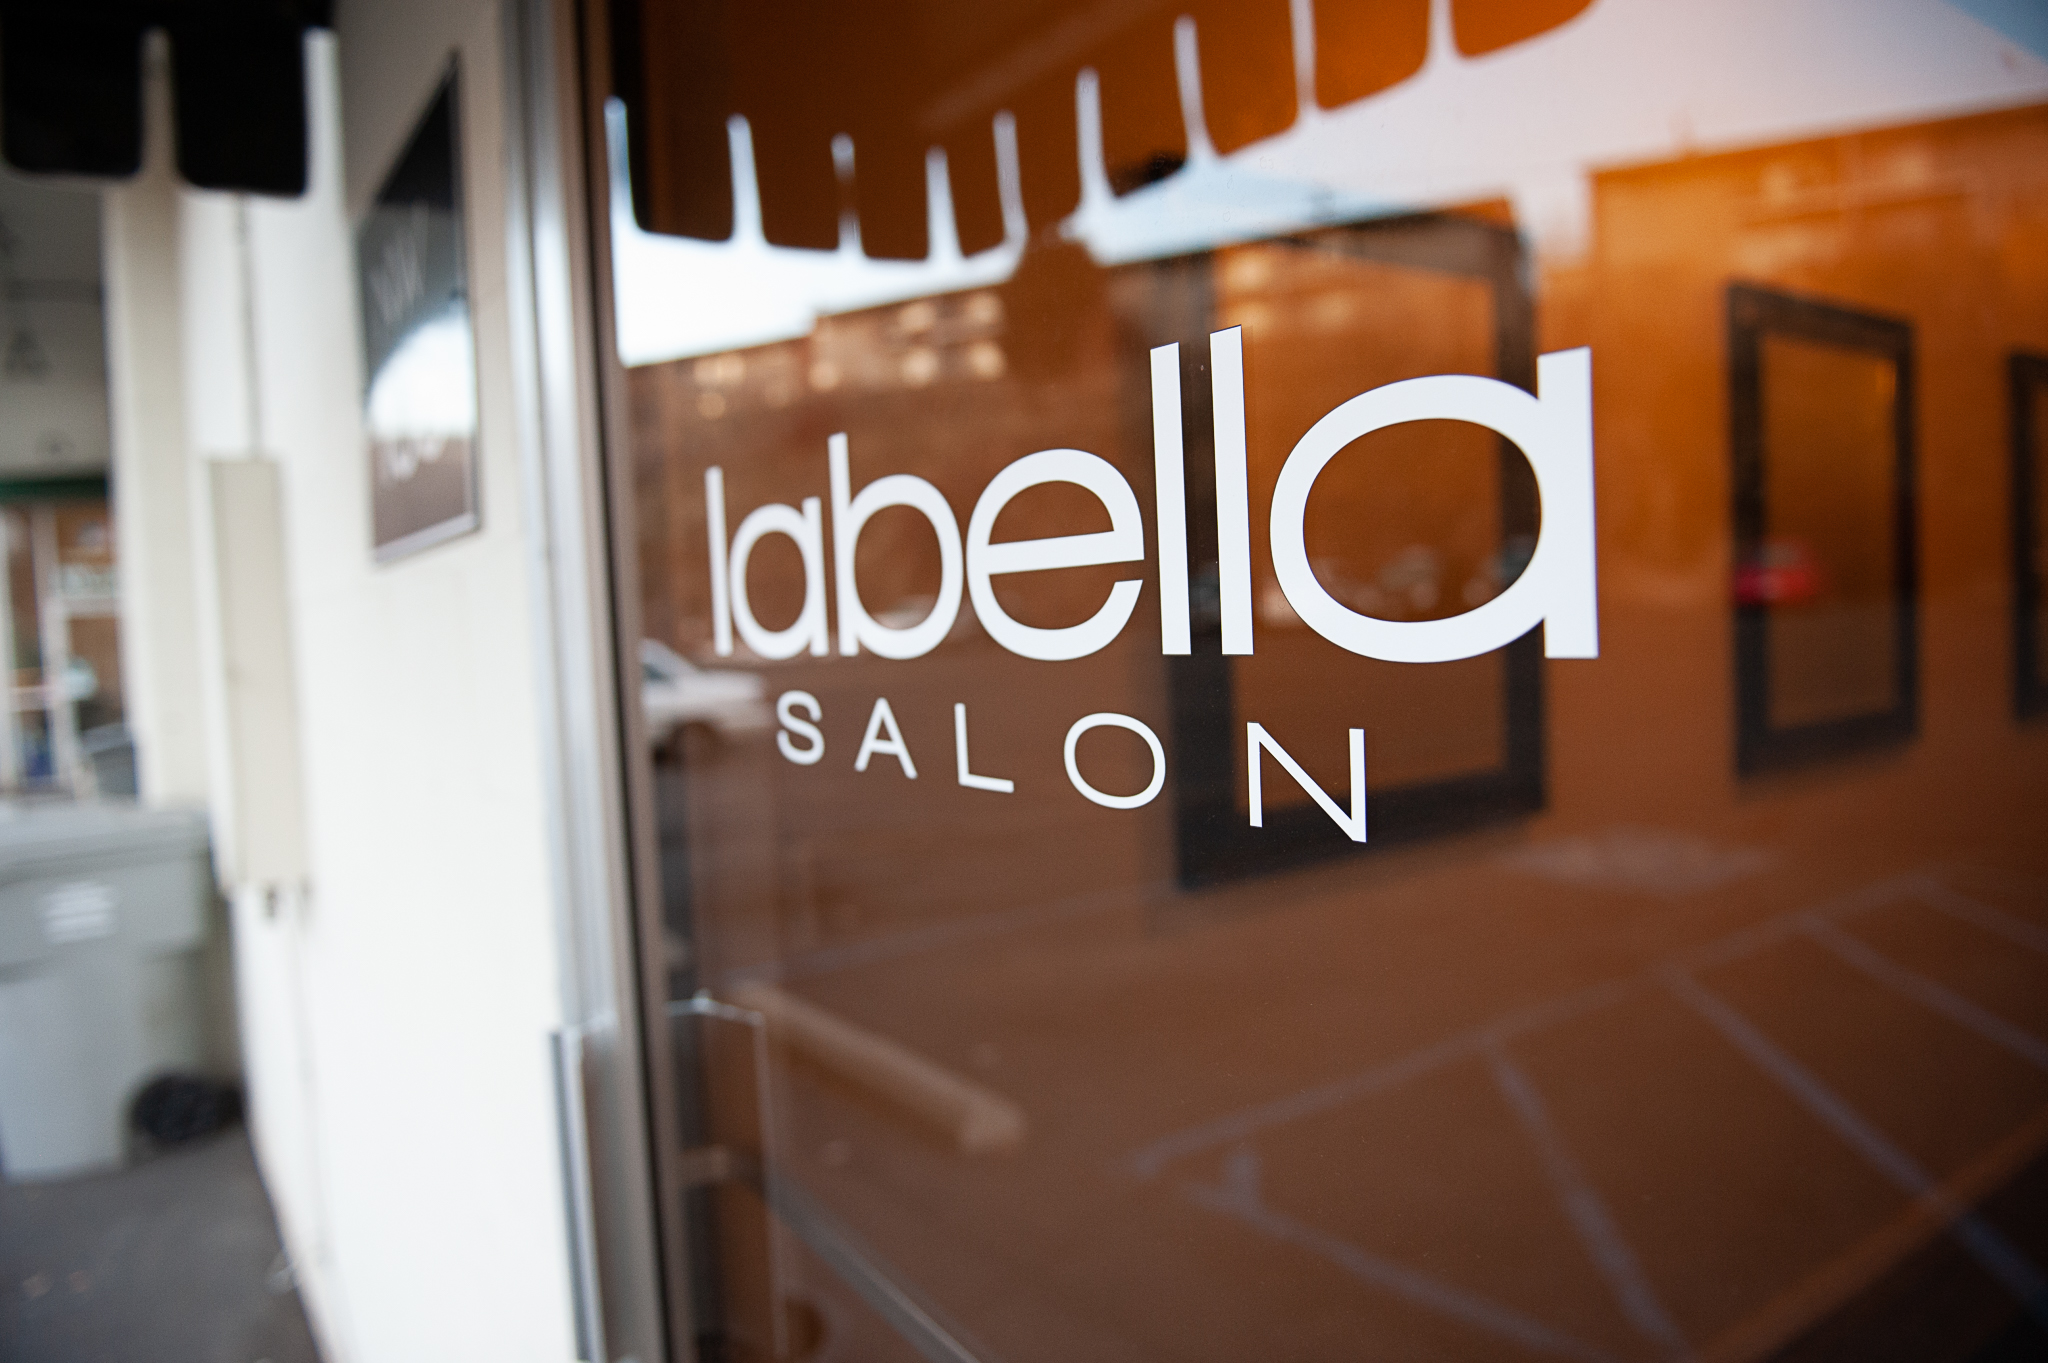 LaBella-Salon-Spa-front.jpg